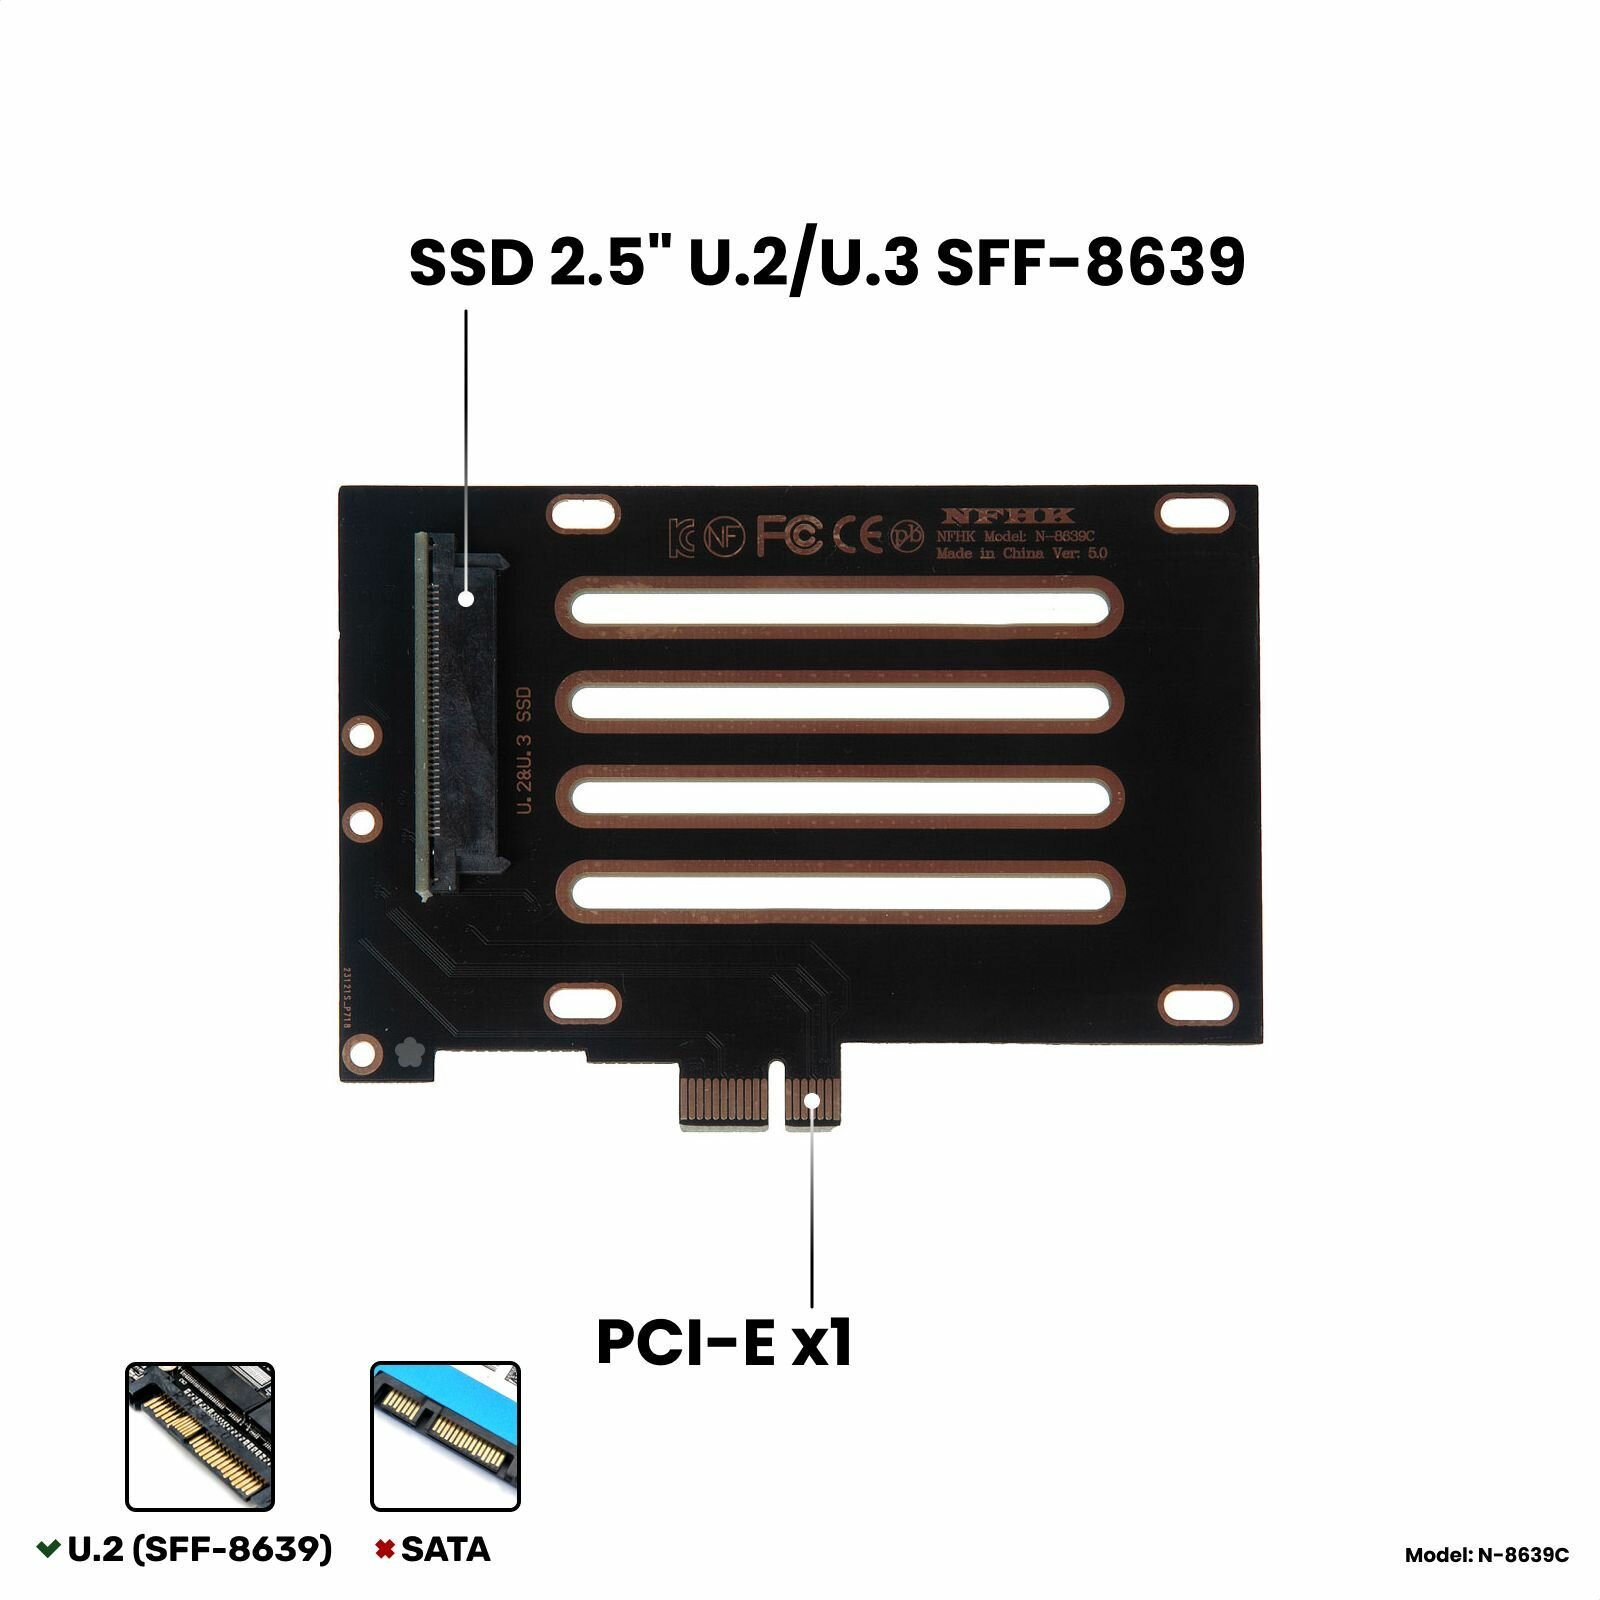 Адаптер-переходник (плата расширения) для установки SSD 2.5" U.2/U.3 SFF-8639 PCI-E NVMe в слот PCI-E x1 черный NHFK N-8639C